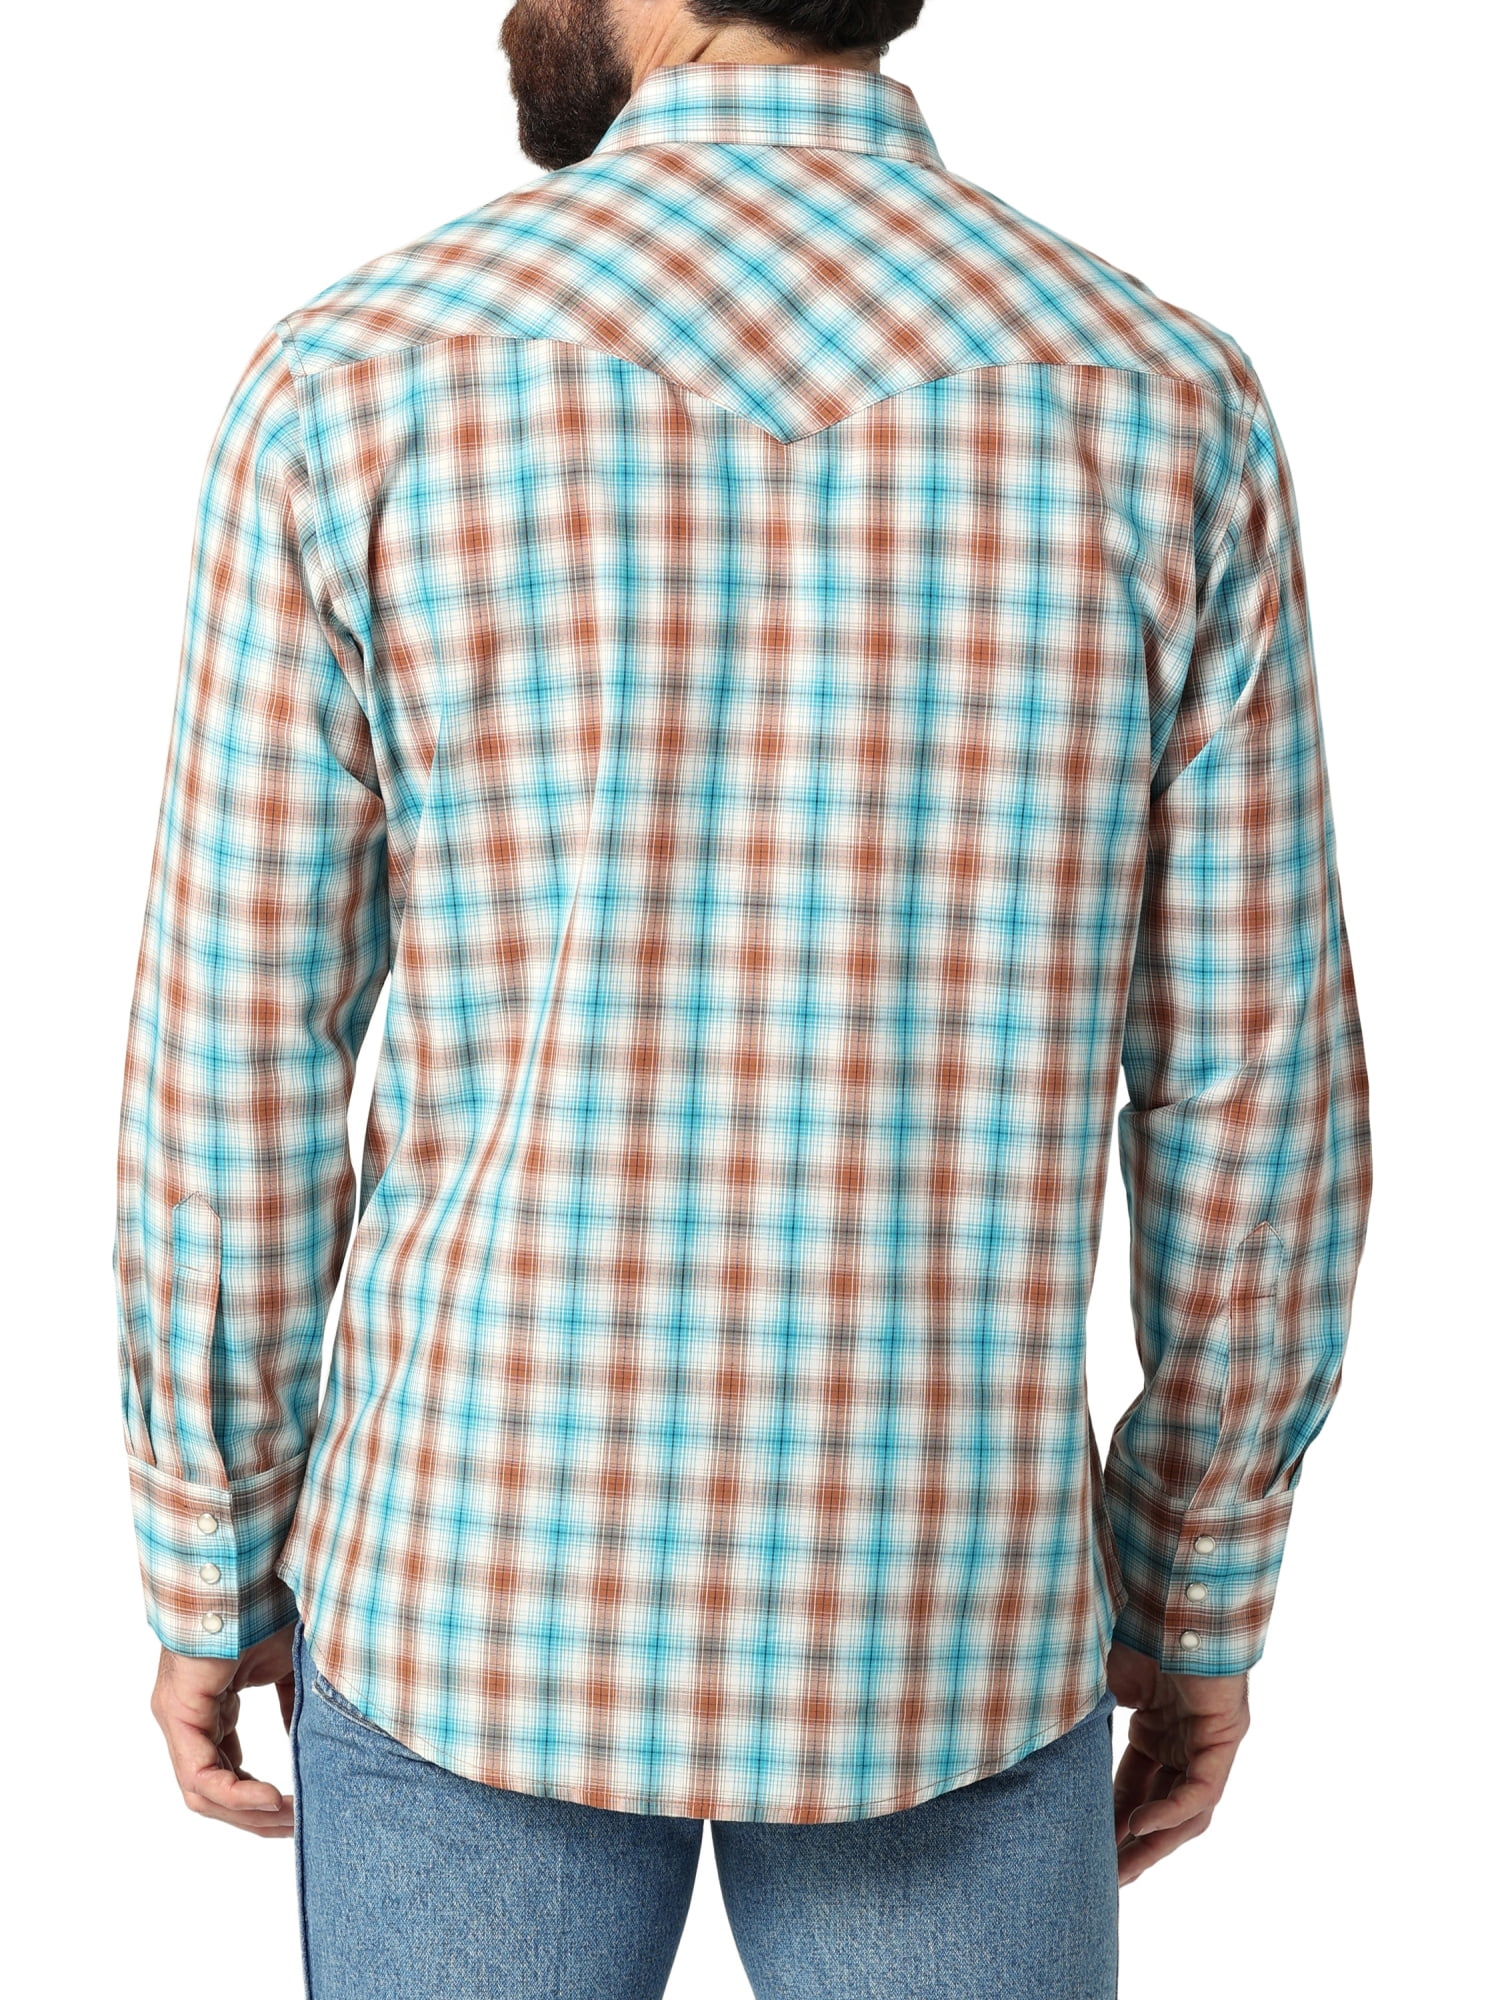 Men's Wrangler® Flannel Plaid Shirt in Vaporous Gray